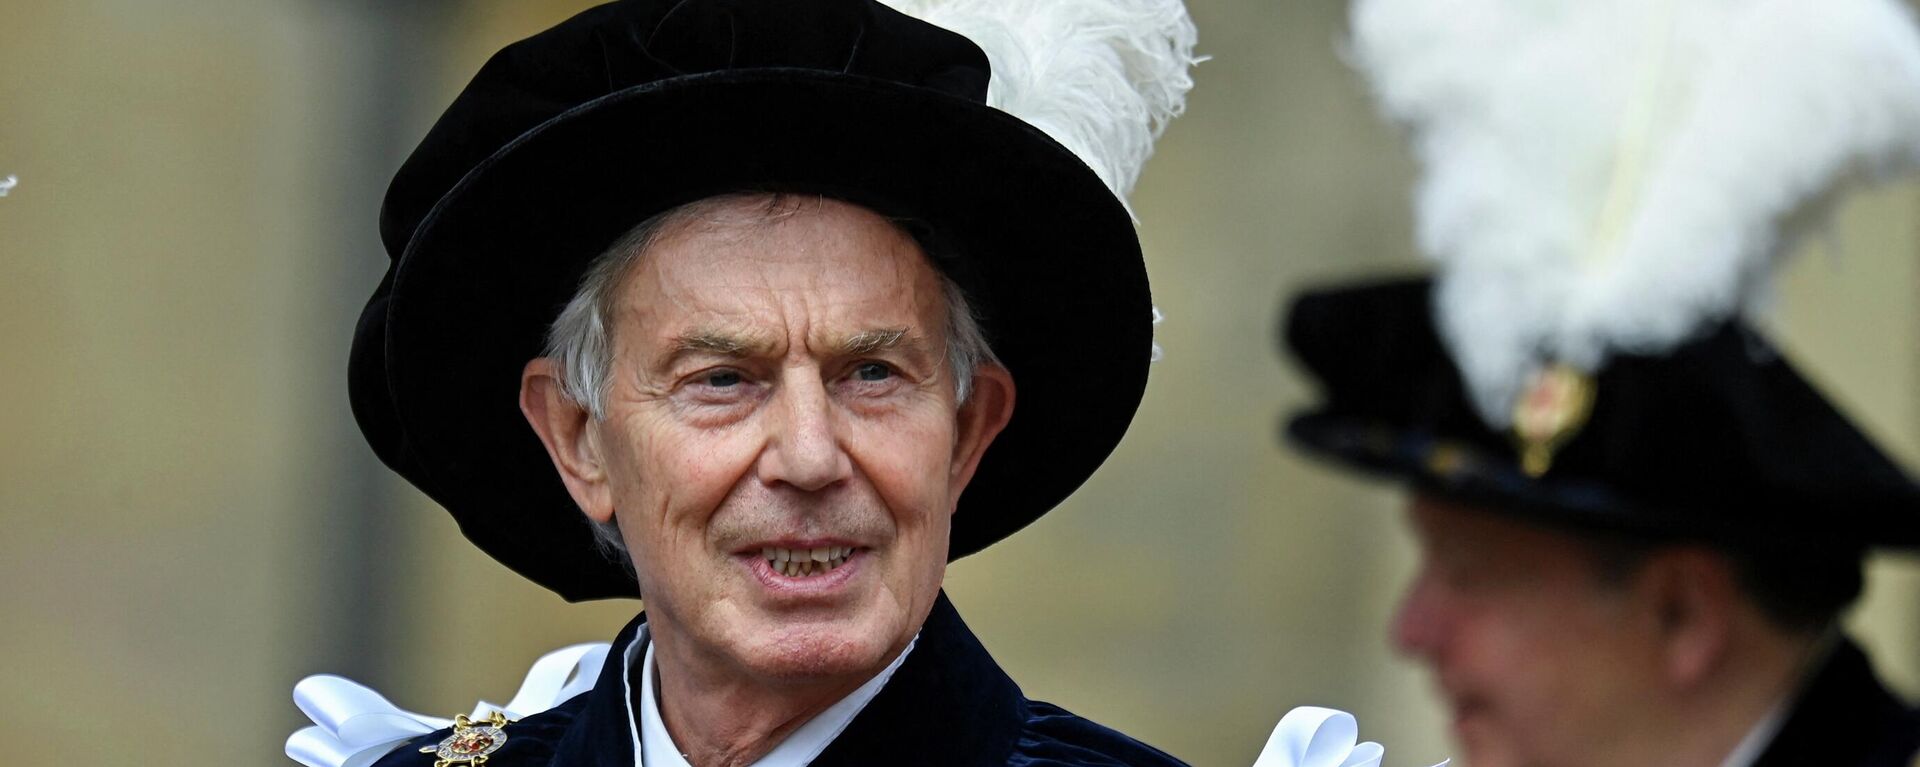 Former British Prime Minister Tony Blair attends the Order of the Garter service at Windsor Castle - Sputnik International, 1920, 19.07.2022